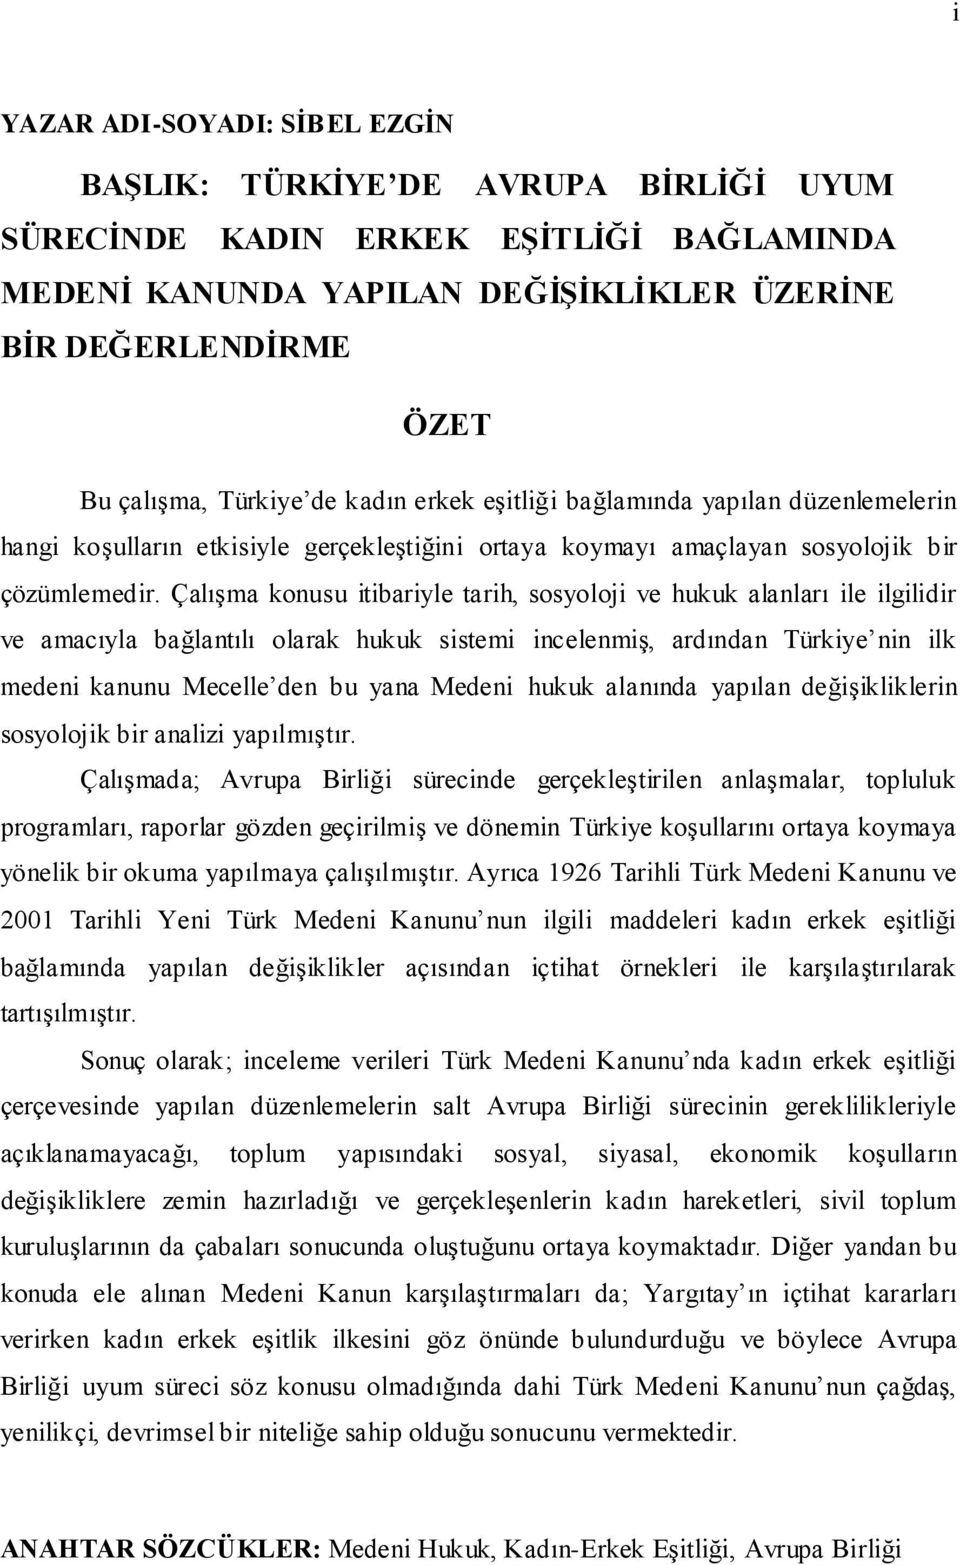 ÇalıĢma konusu itibariyle tarih, sosyoloji ve hukuk alanları ile ilgilidir ve amacıyla bağlantılı olarak hukuk sistemi incelenmiģ, ardından Türkiye nin ilk medeni kanunu Mecelle den bu yana Medeni